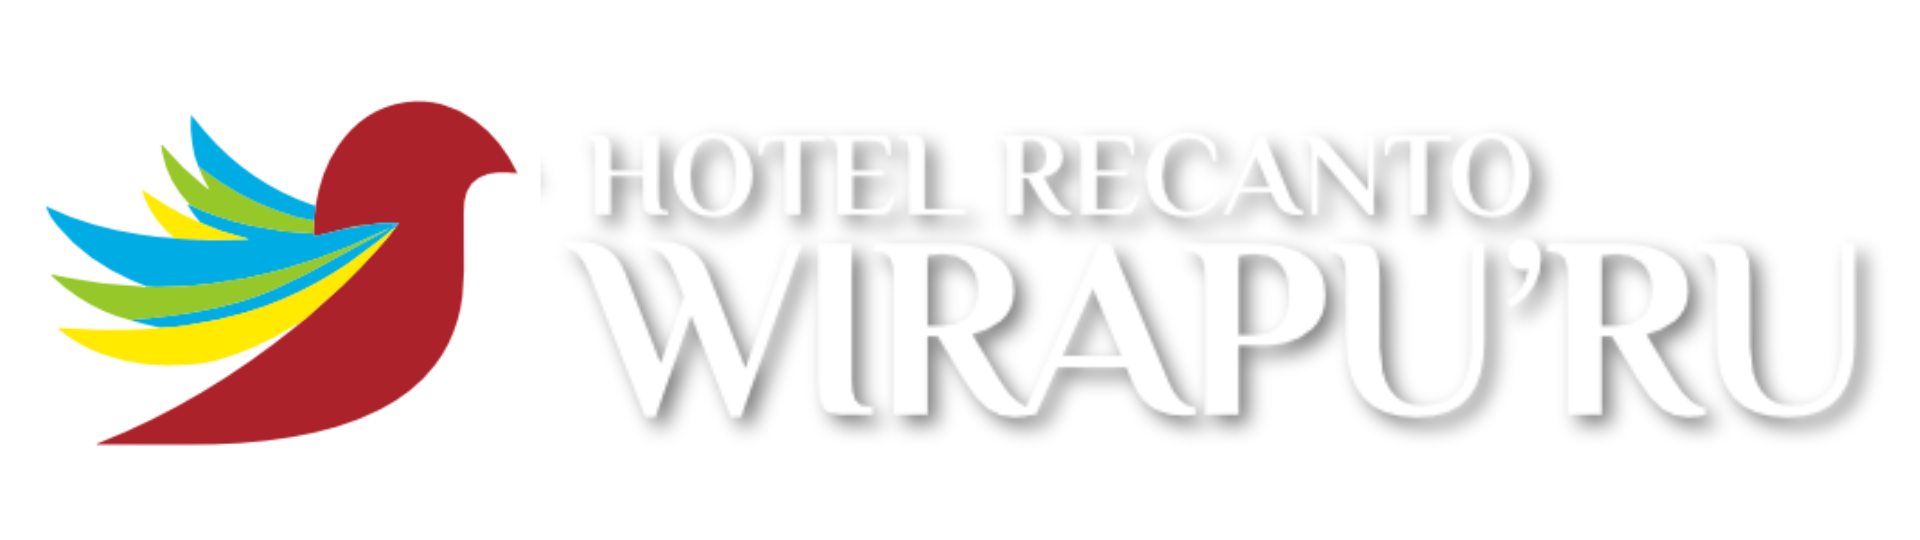 Hotel Recanto Wirapu'ru